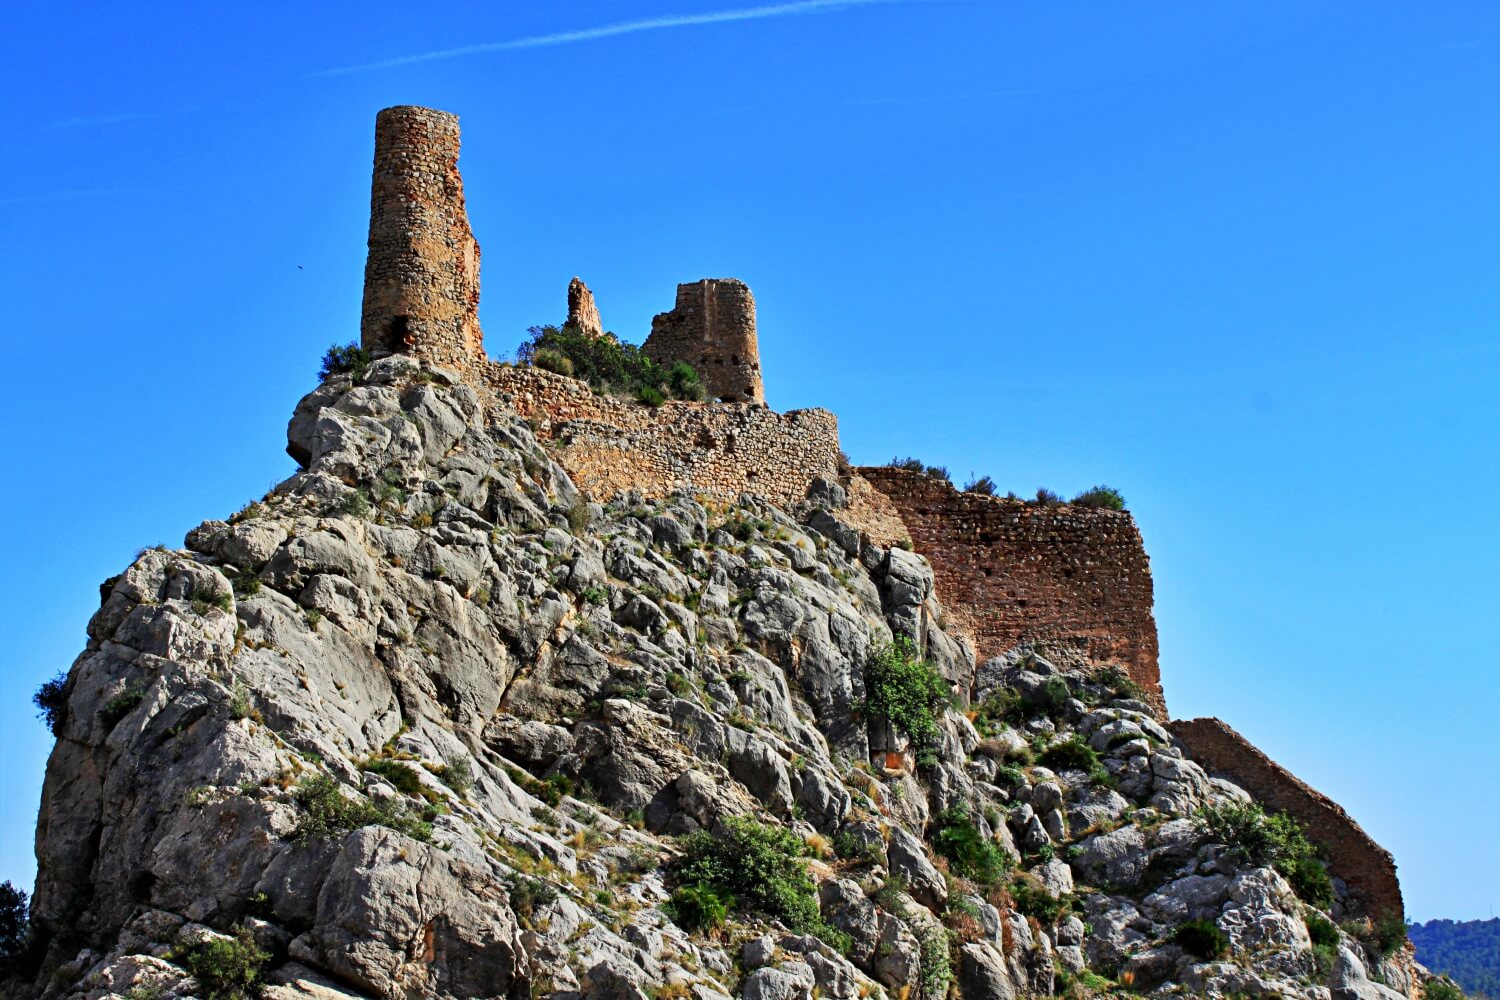 The castle of Borriol